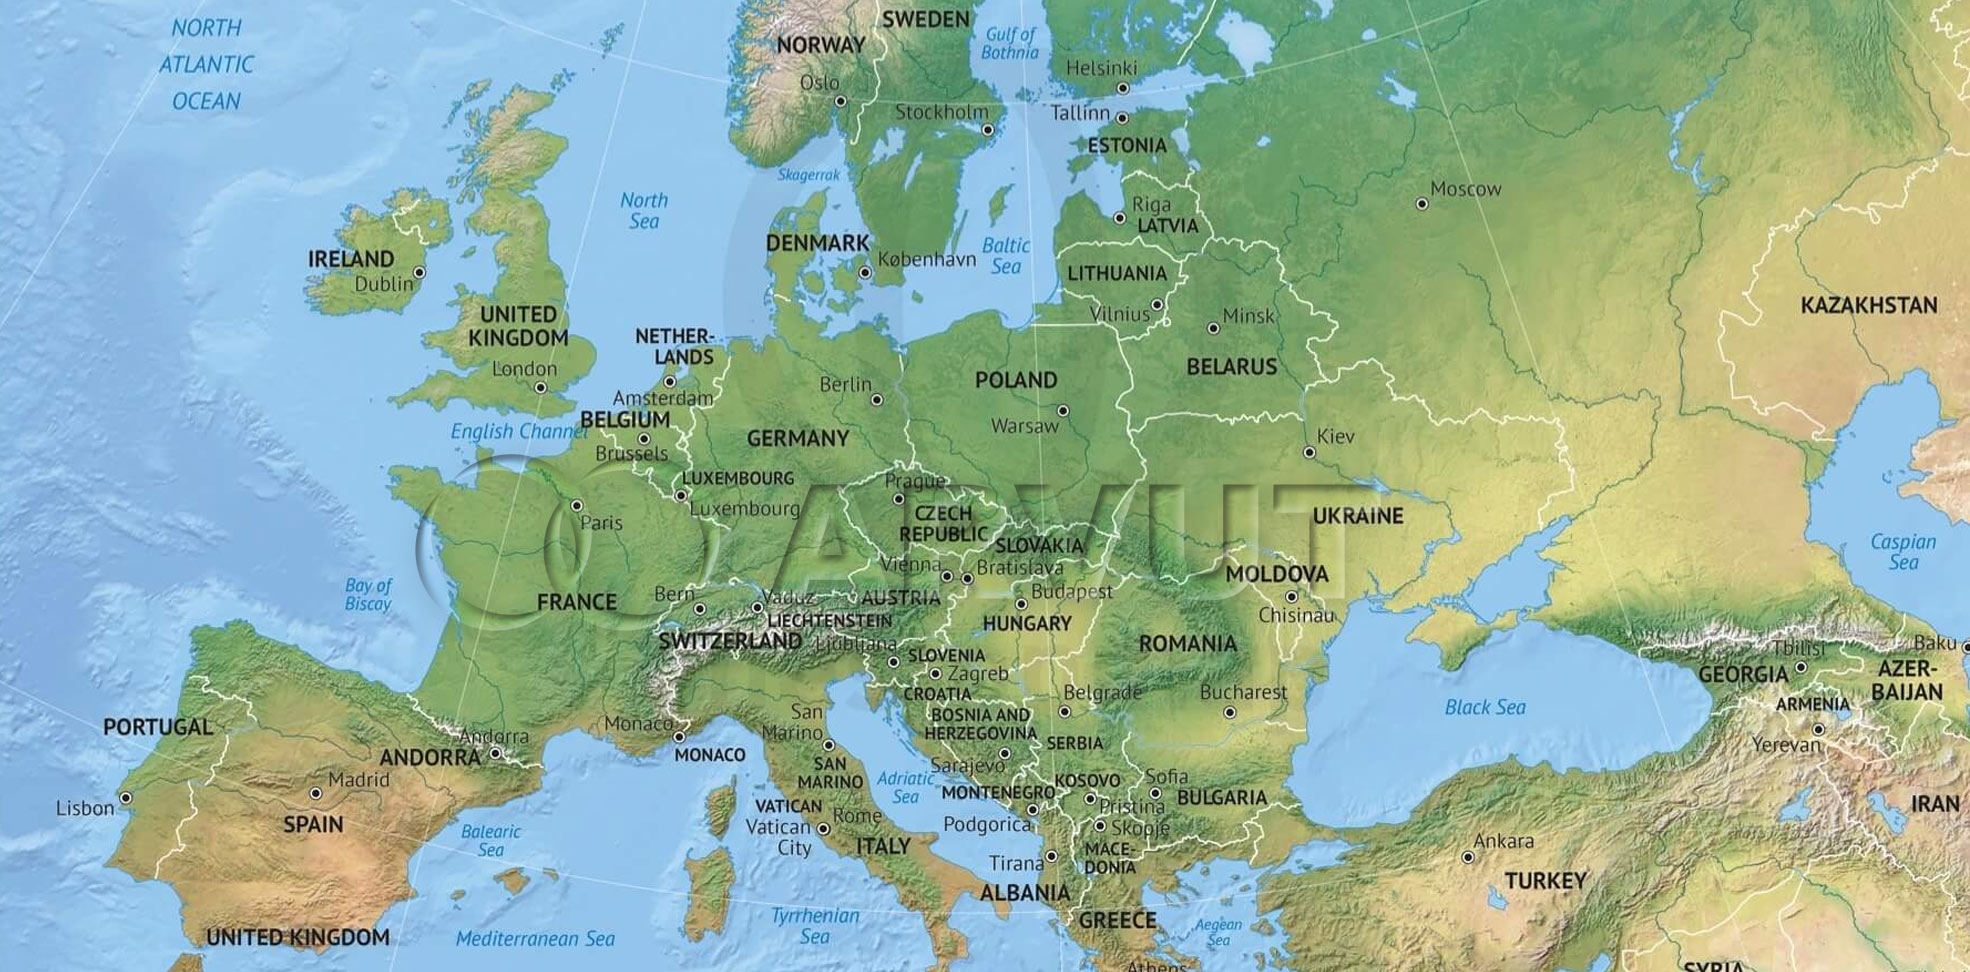 ARVUT - spediční servis po celé Evropě